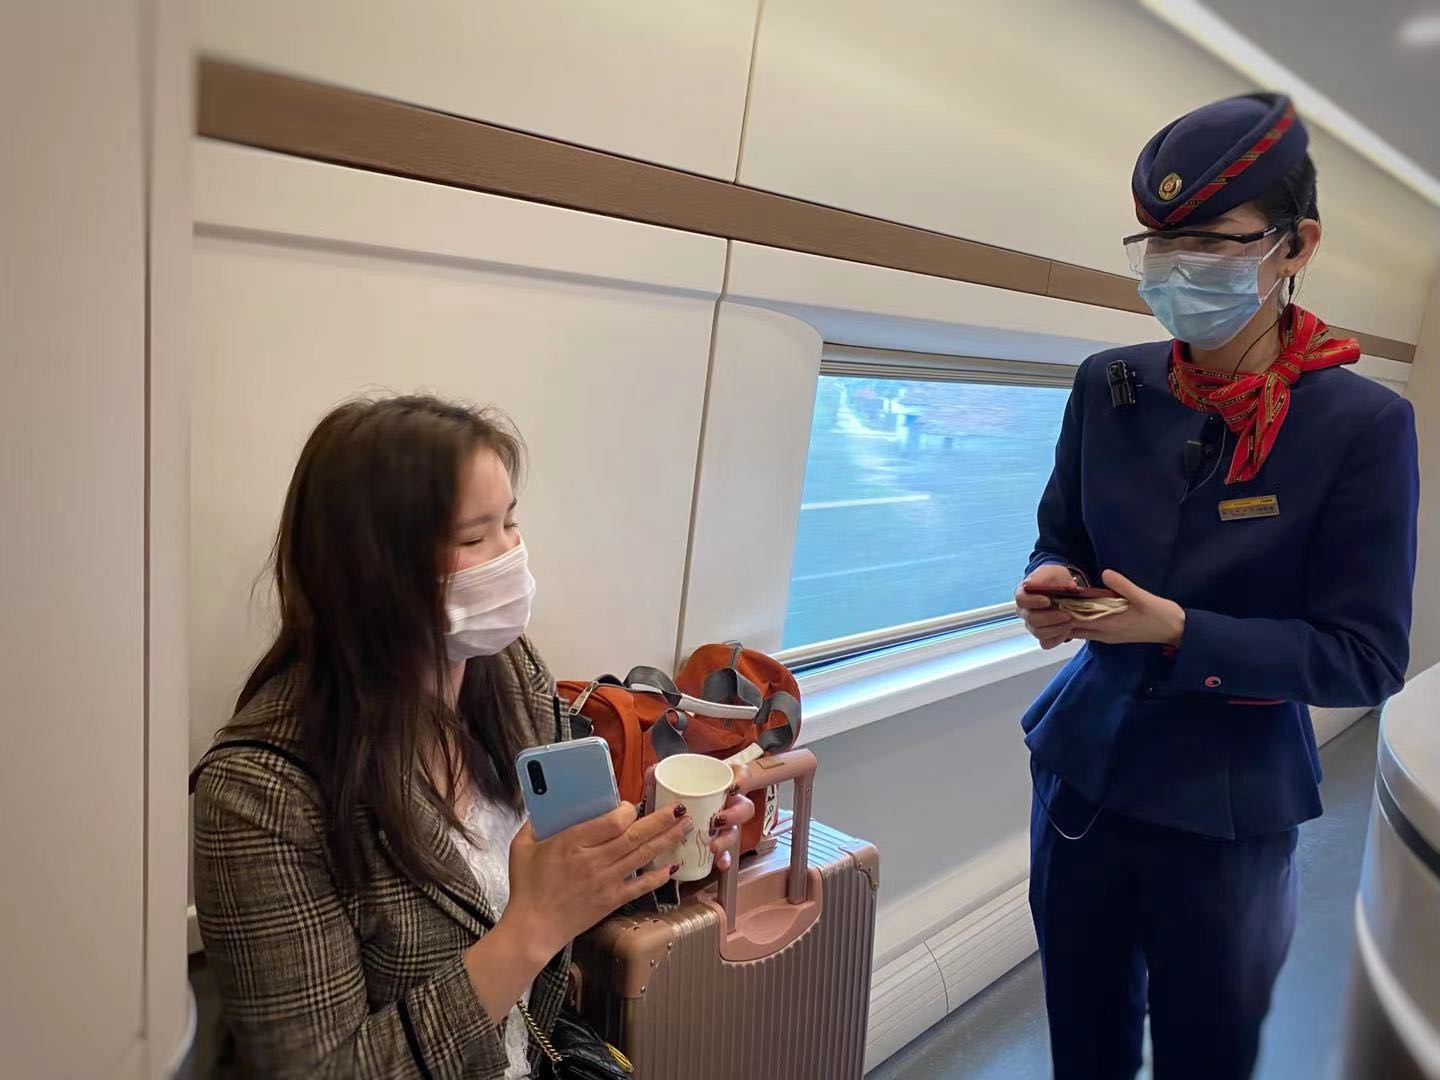 拿着去恩施的票上了去广州的车，列车长走过来，帮了旅客大忙